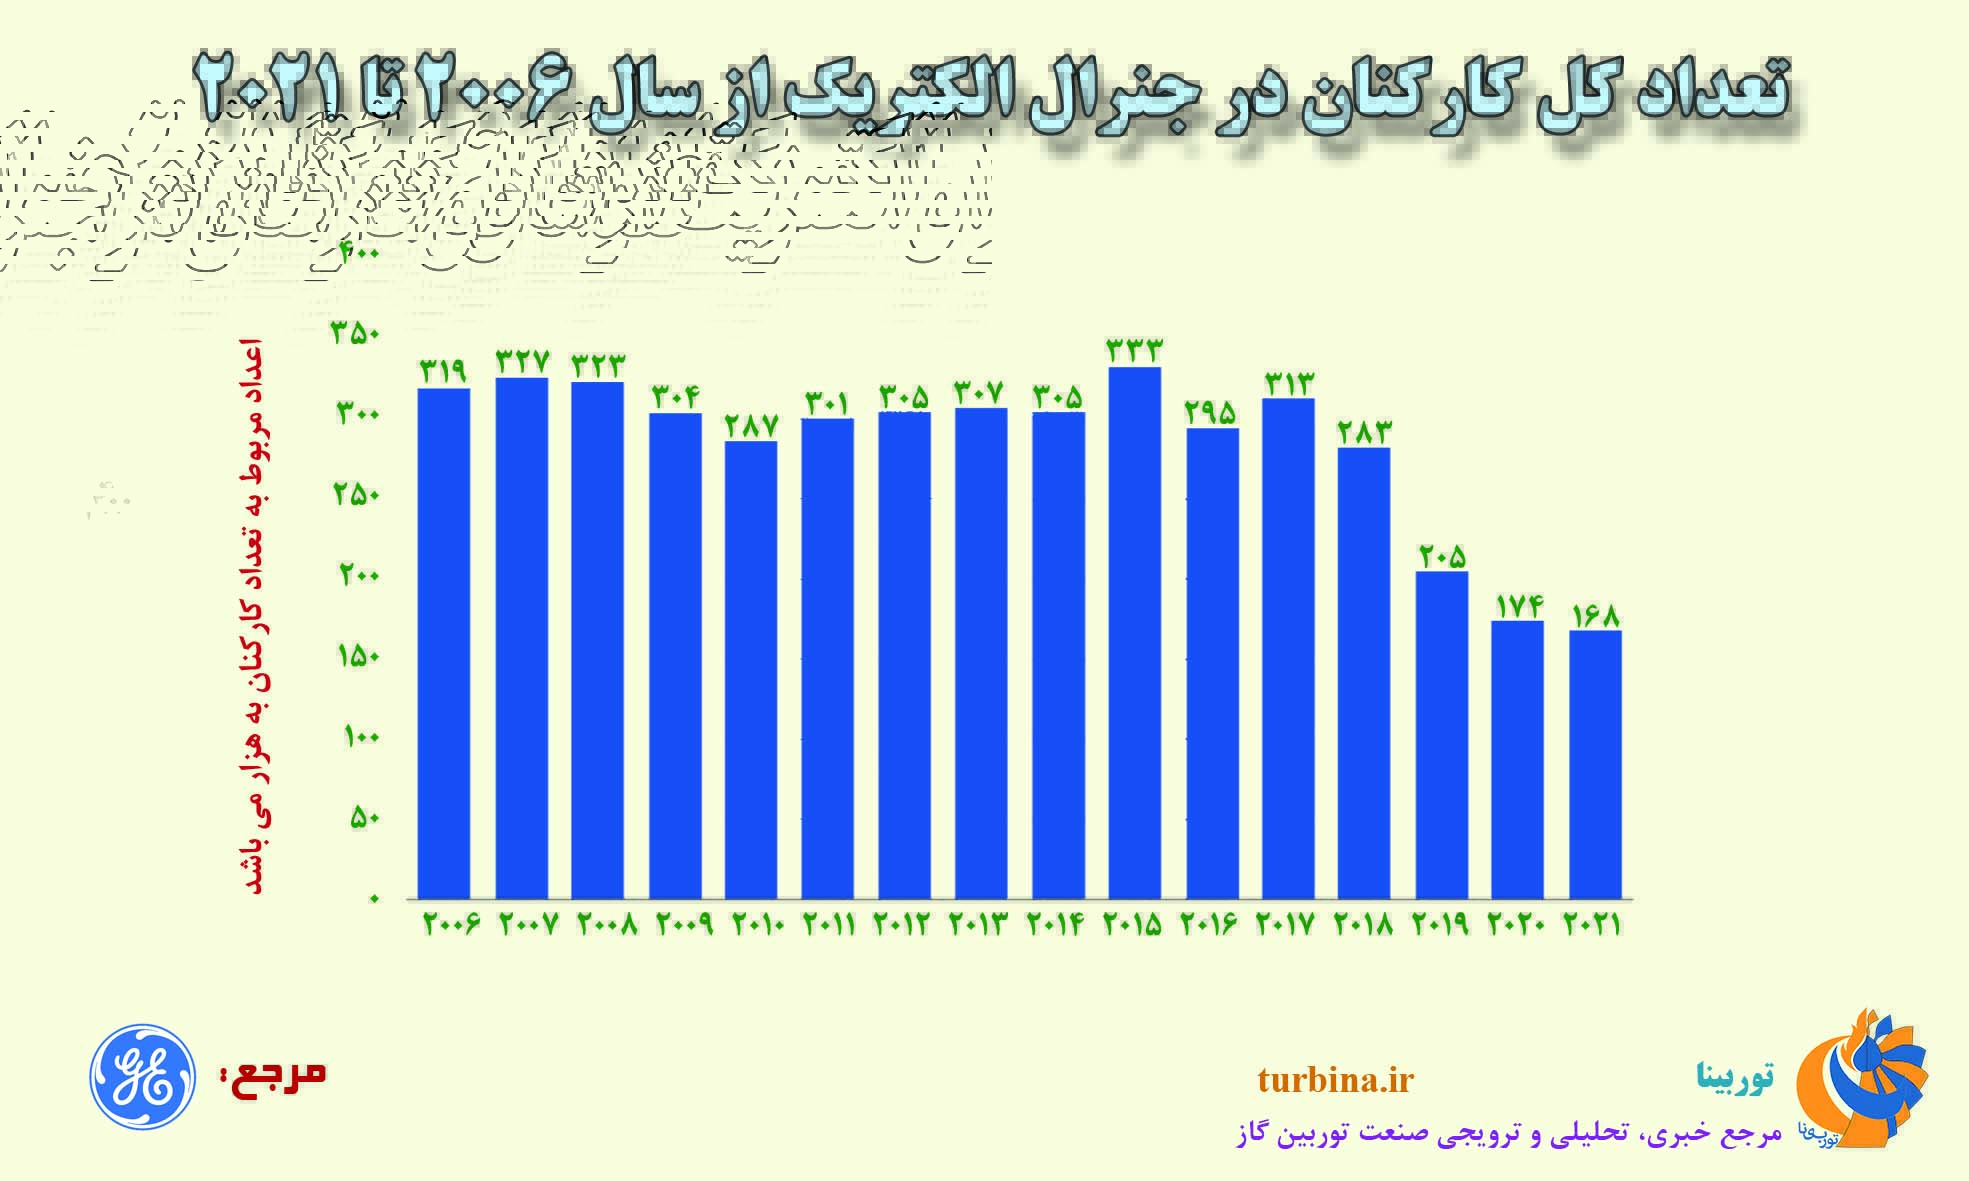 تعداد کل کارکنان در جنرال الکتریک از سال ۲۰۰۶ تا ۲۰۲۱